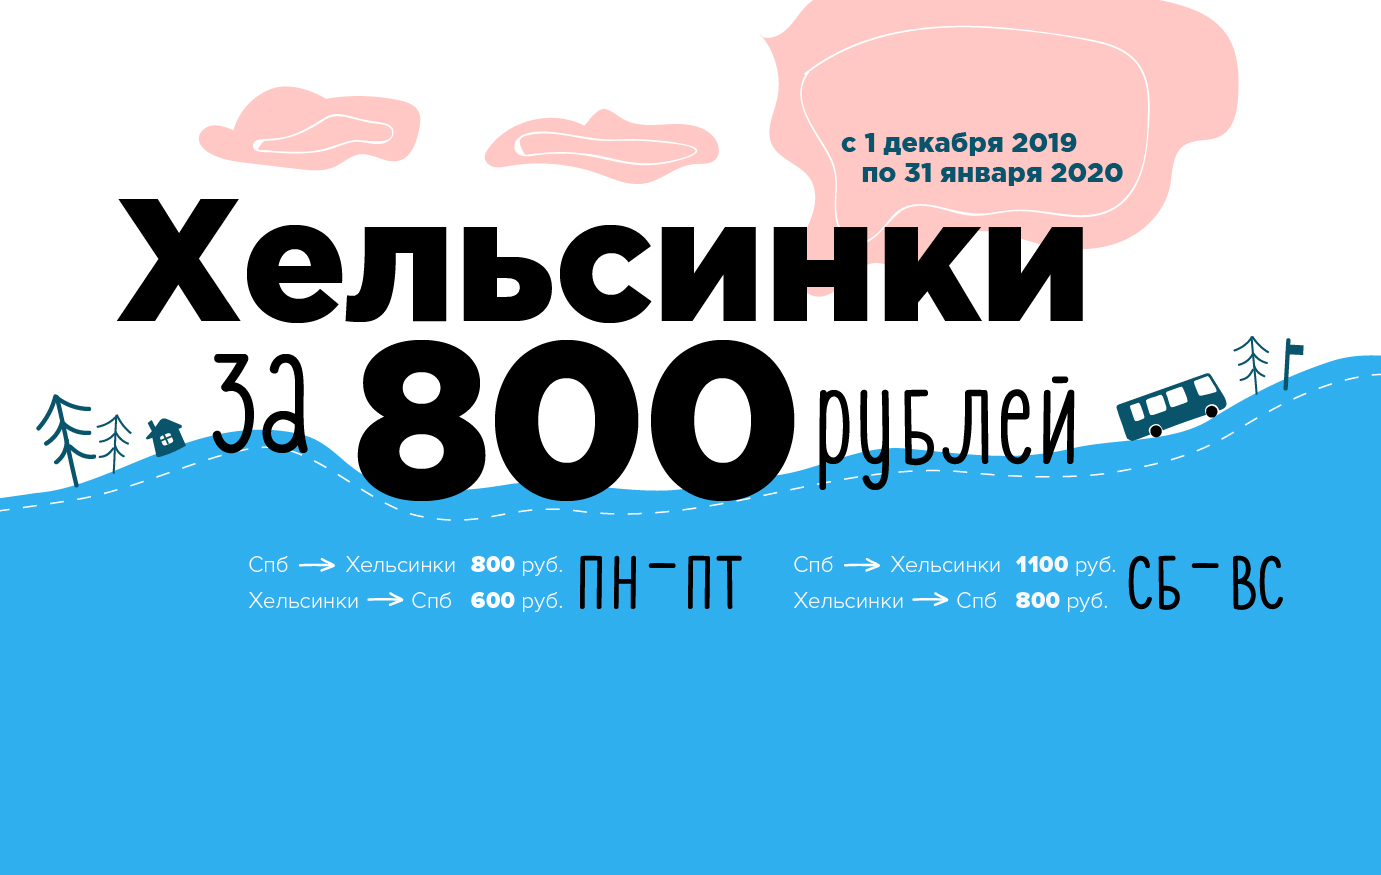 Предновогодняя оттепель: жаркие цены до конца января. Билеты от 600 рублей!